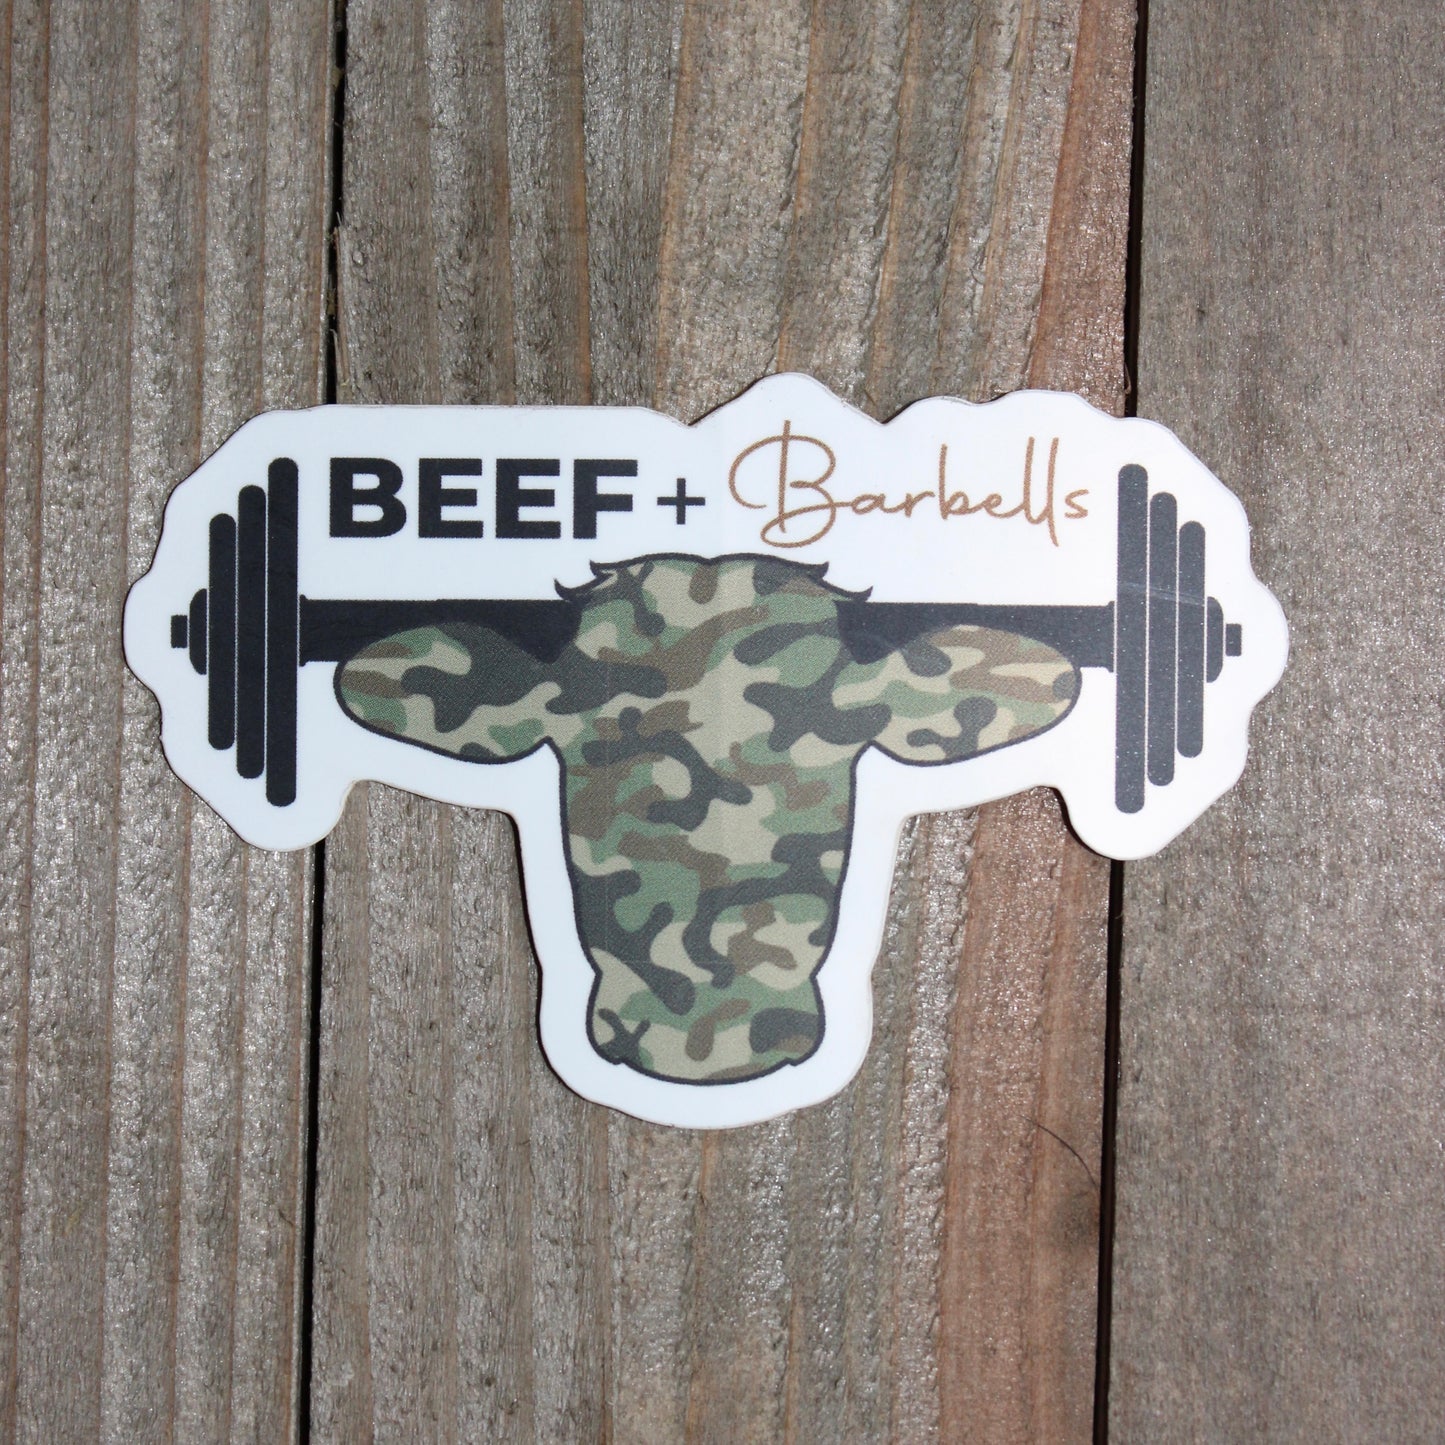 Camo Beef & Barbells Sticker